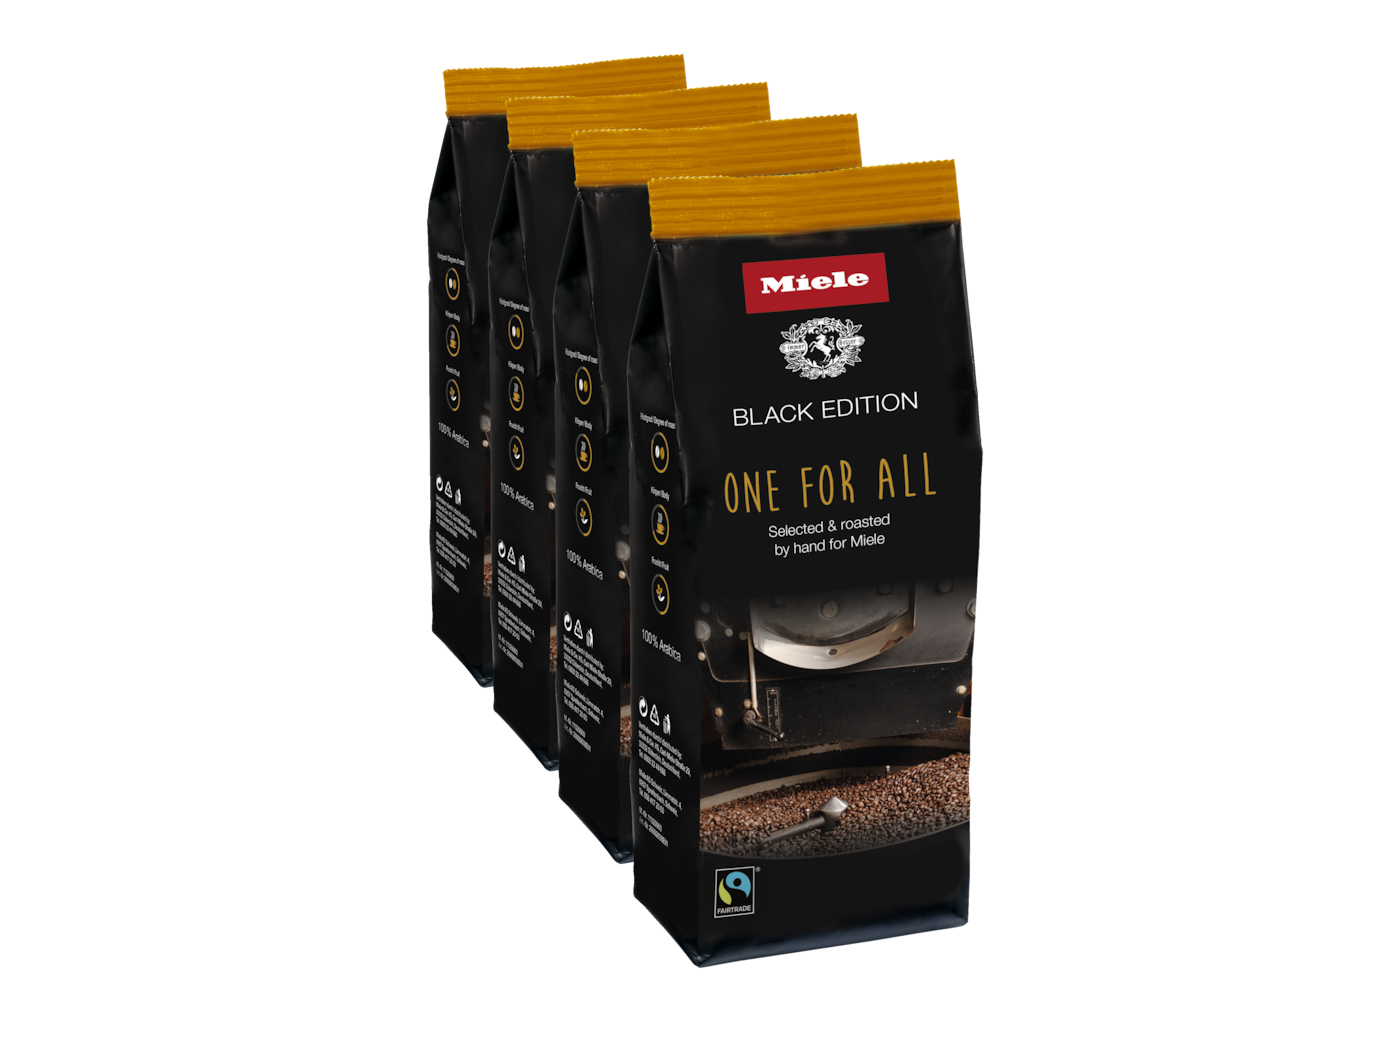 Miele Black Edition One for all Tökéletes espressohoz, café cremához és tejes kávéspecialitásokhoz.